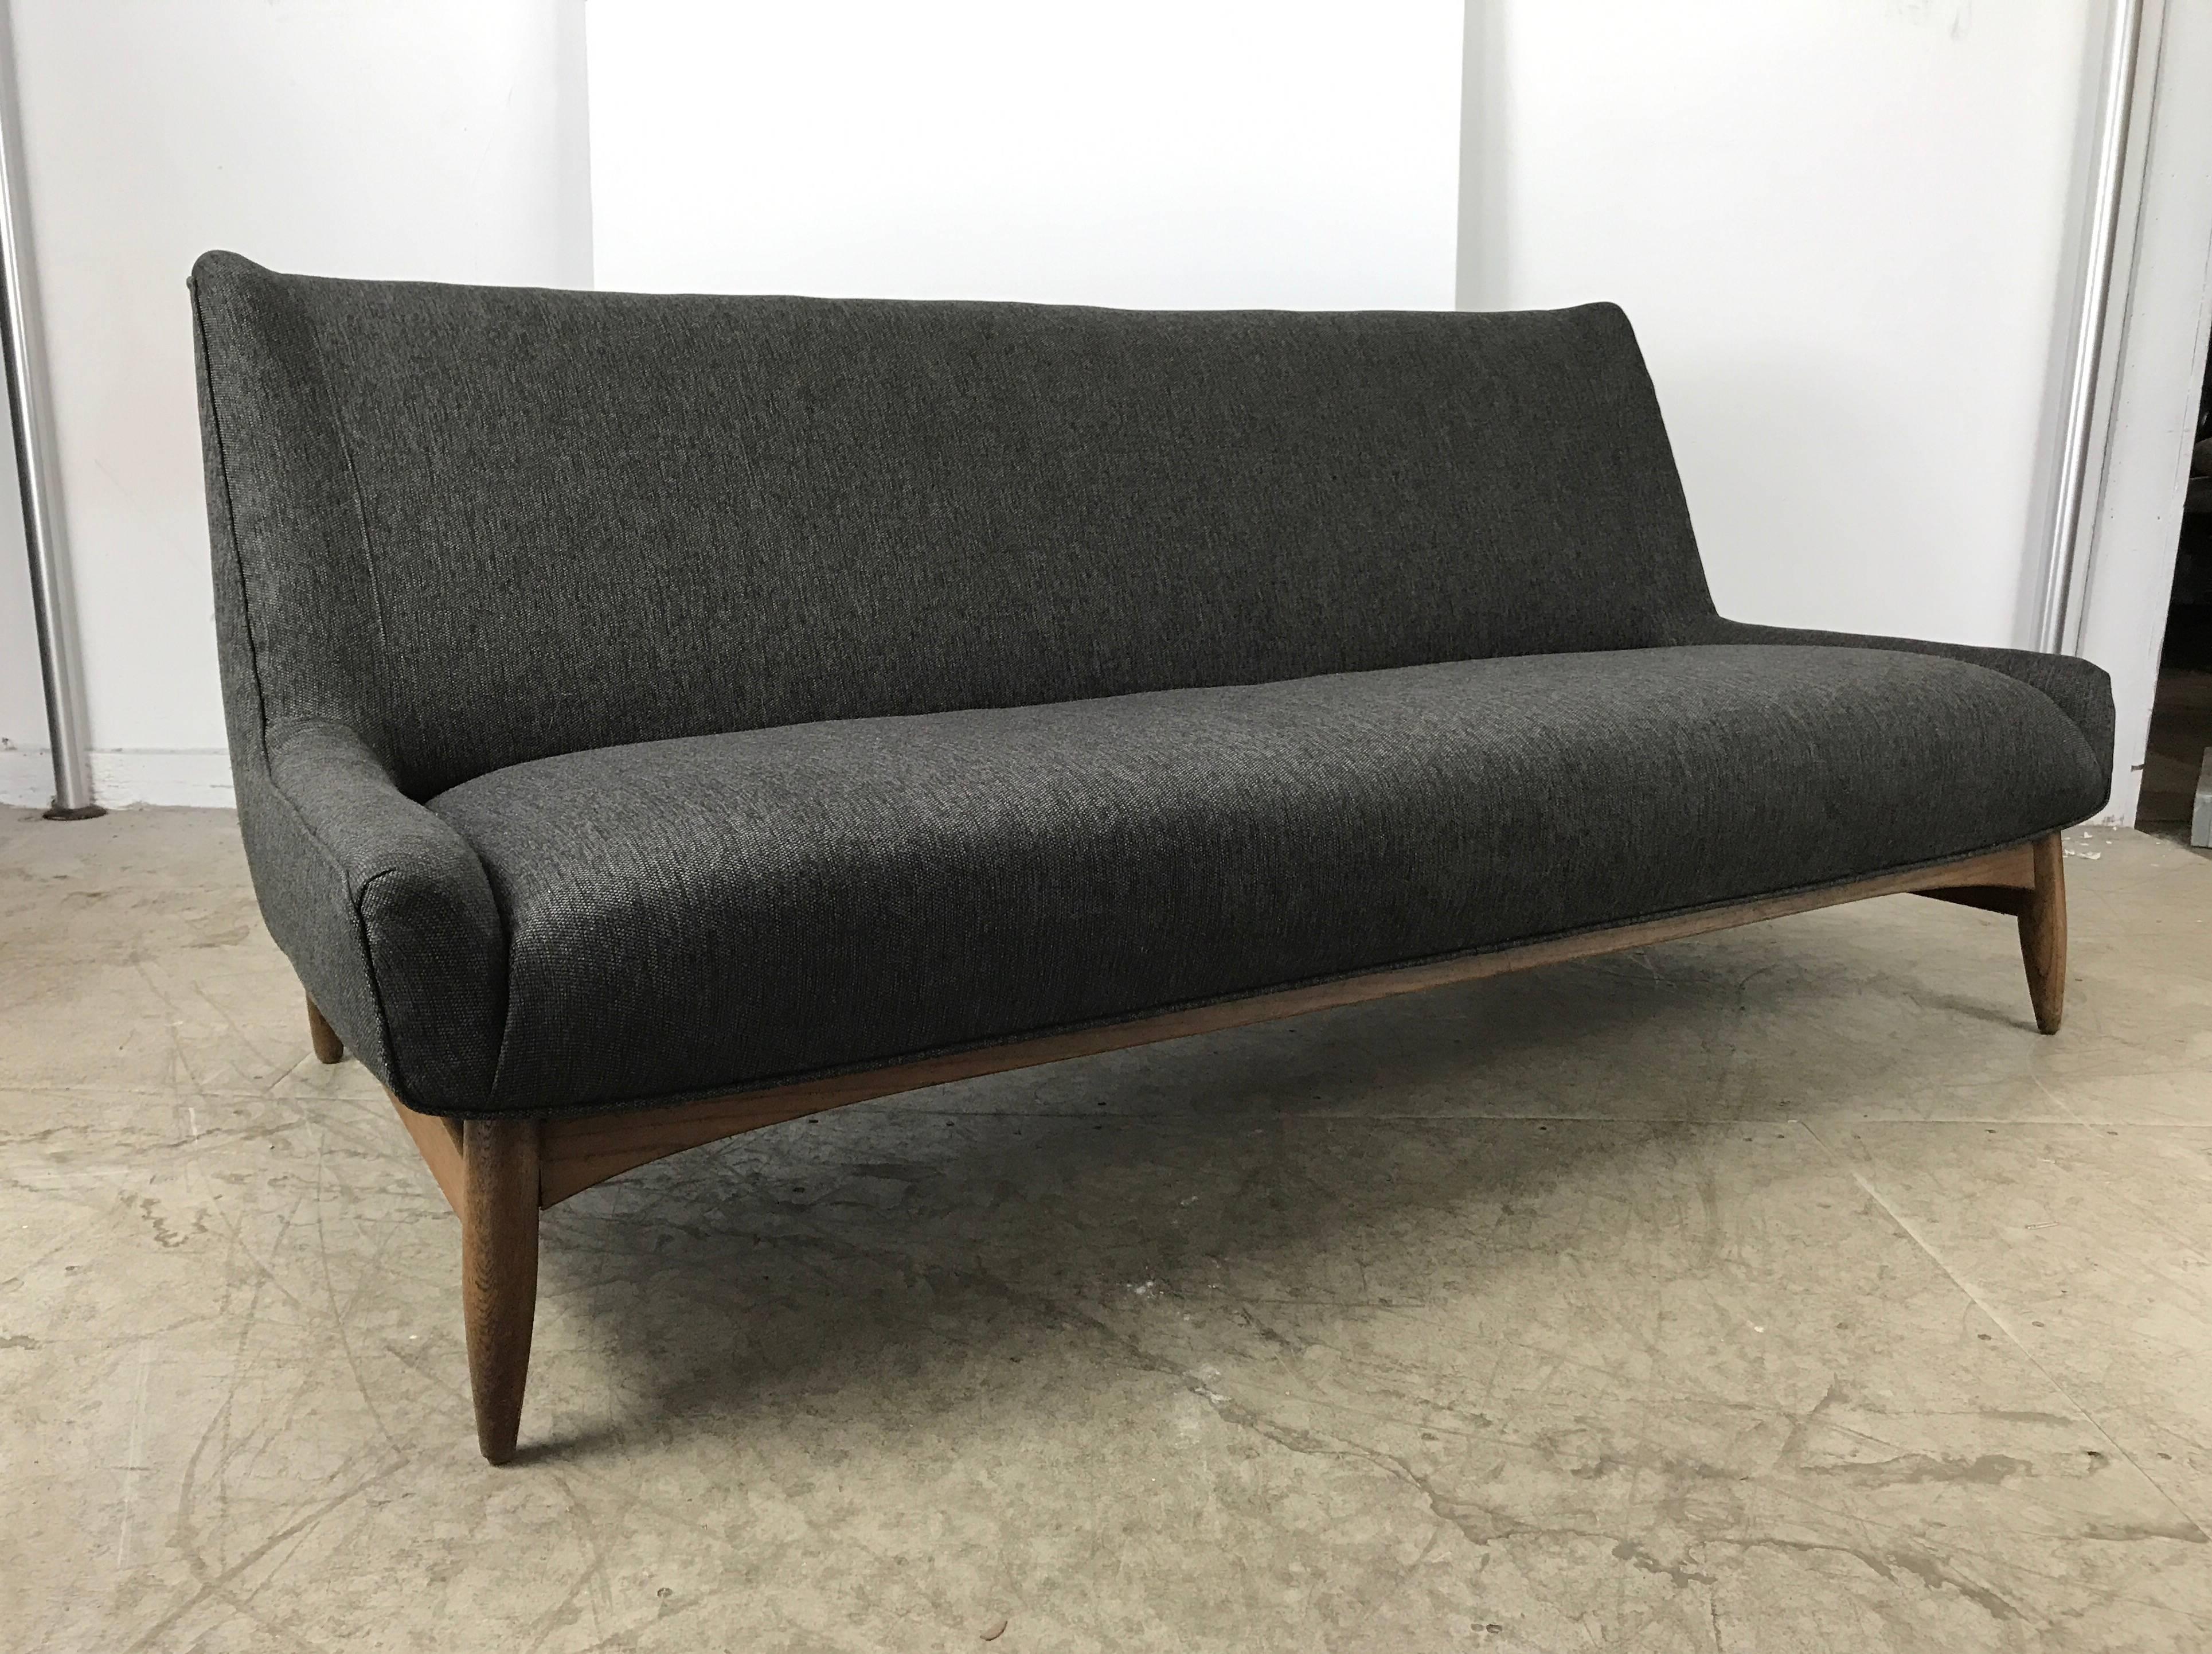 Stunning Danish Modern Sofa Manner of Finn Juhl 1